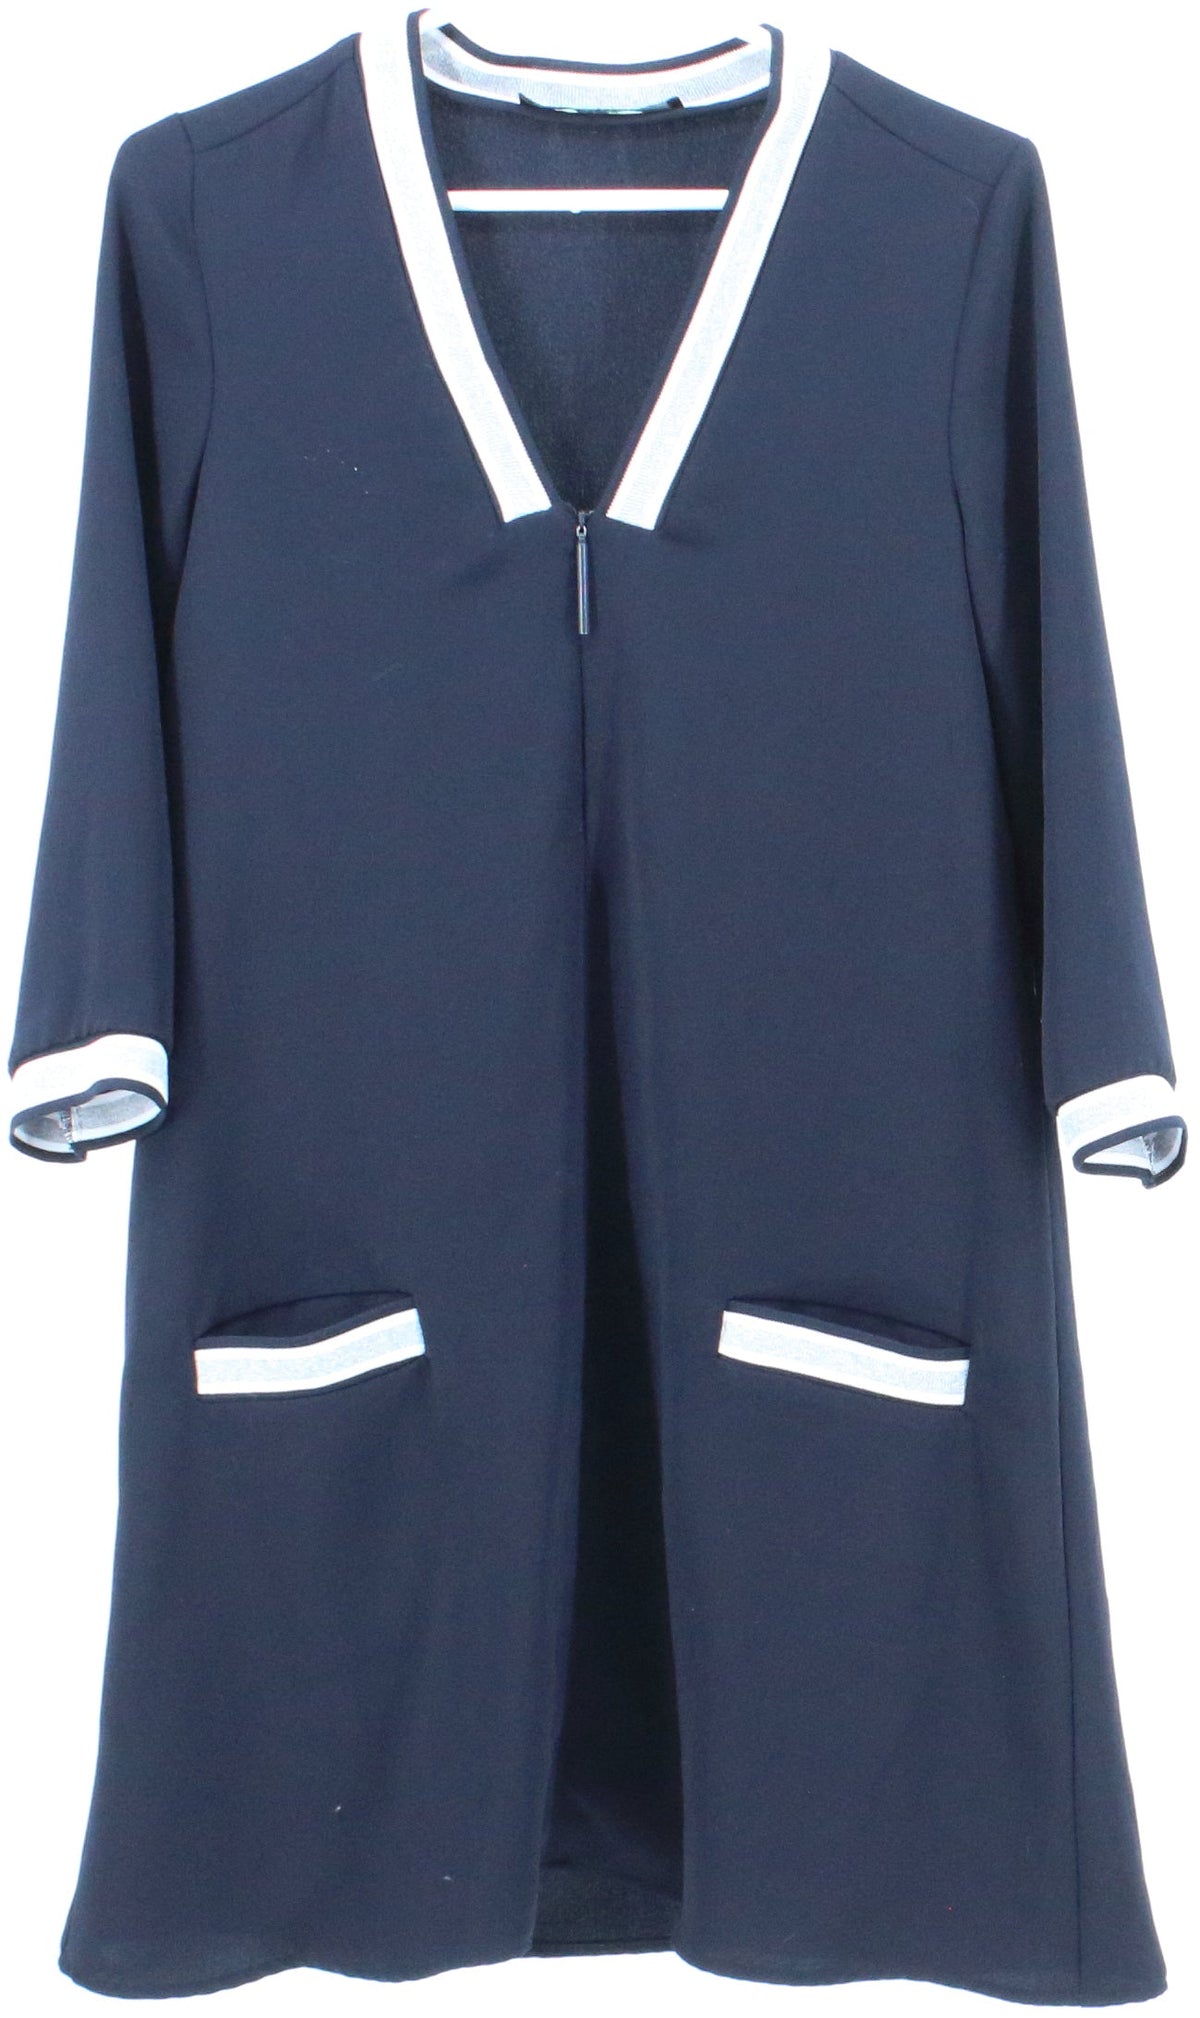 Zara Basic Navy Blue V Neck Short Dress